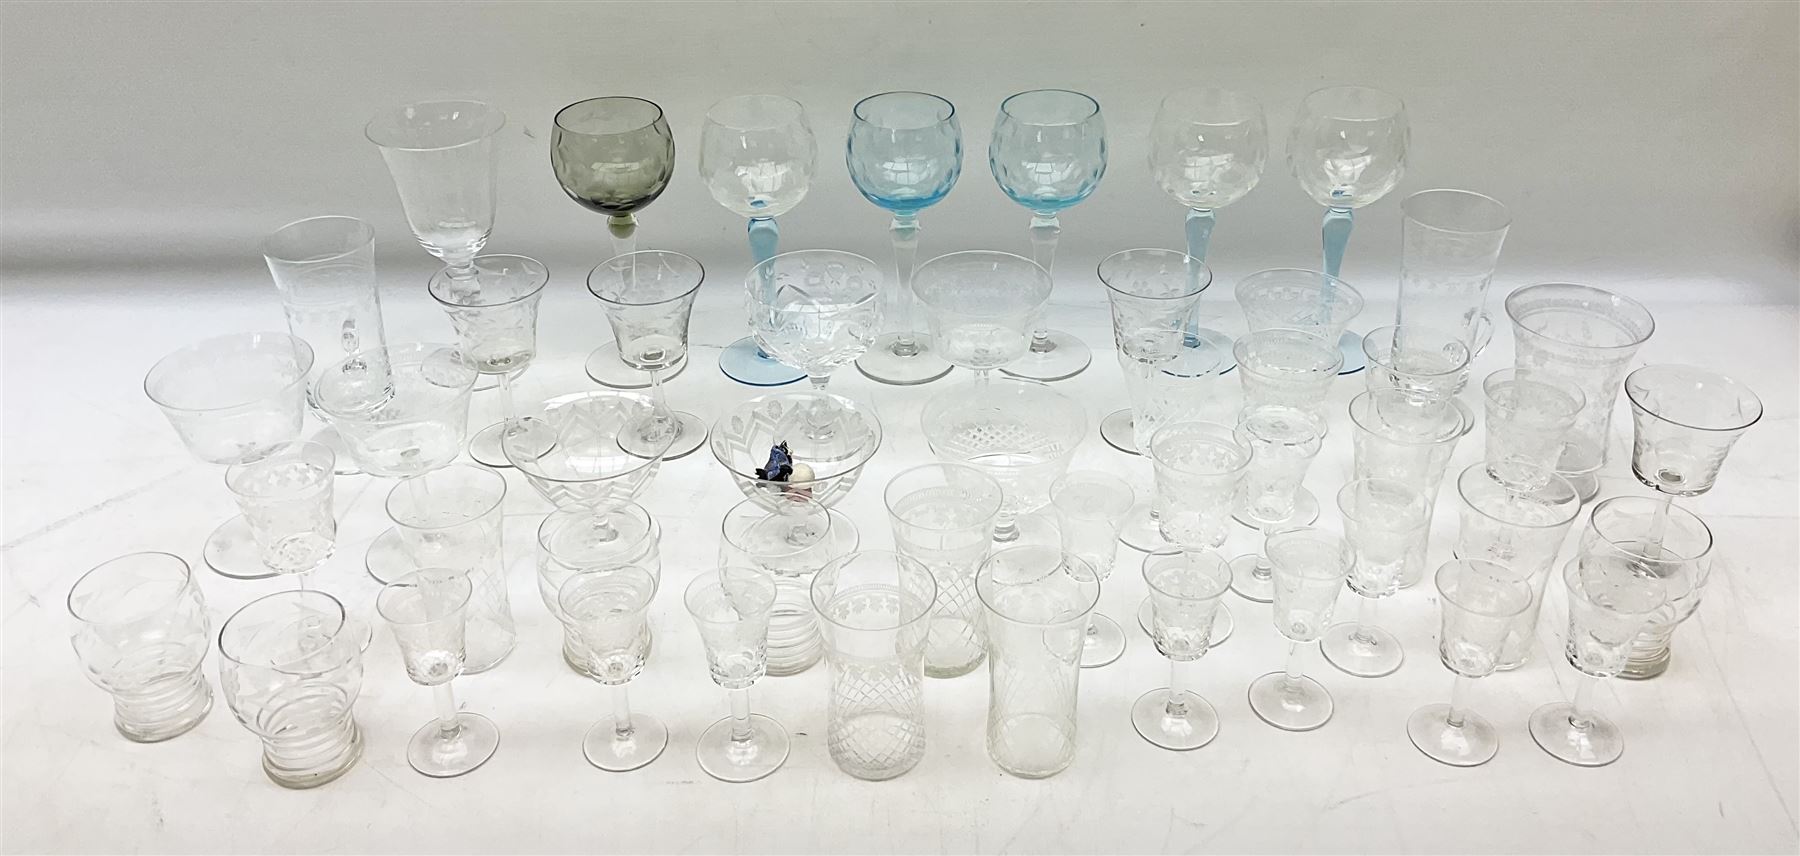 Glassware to include wine glasses